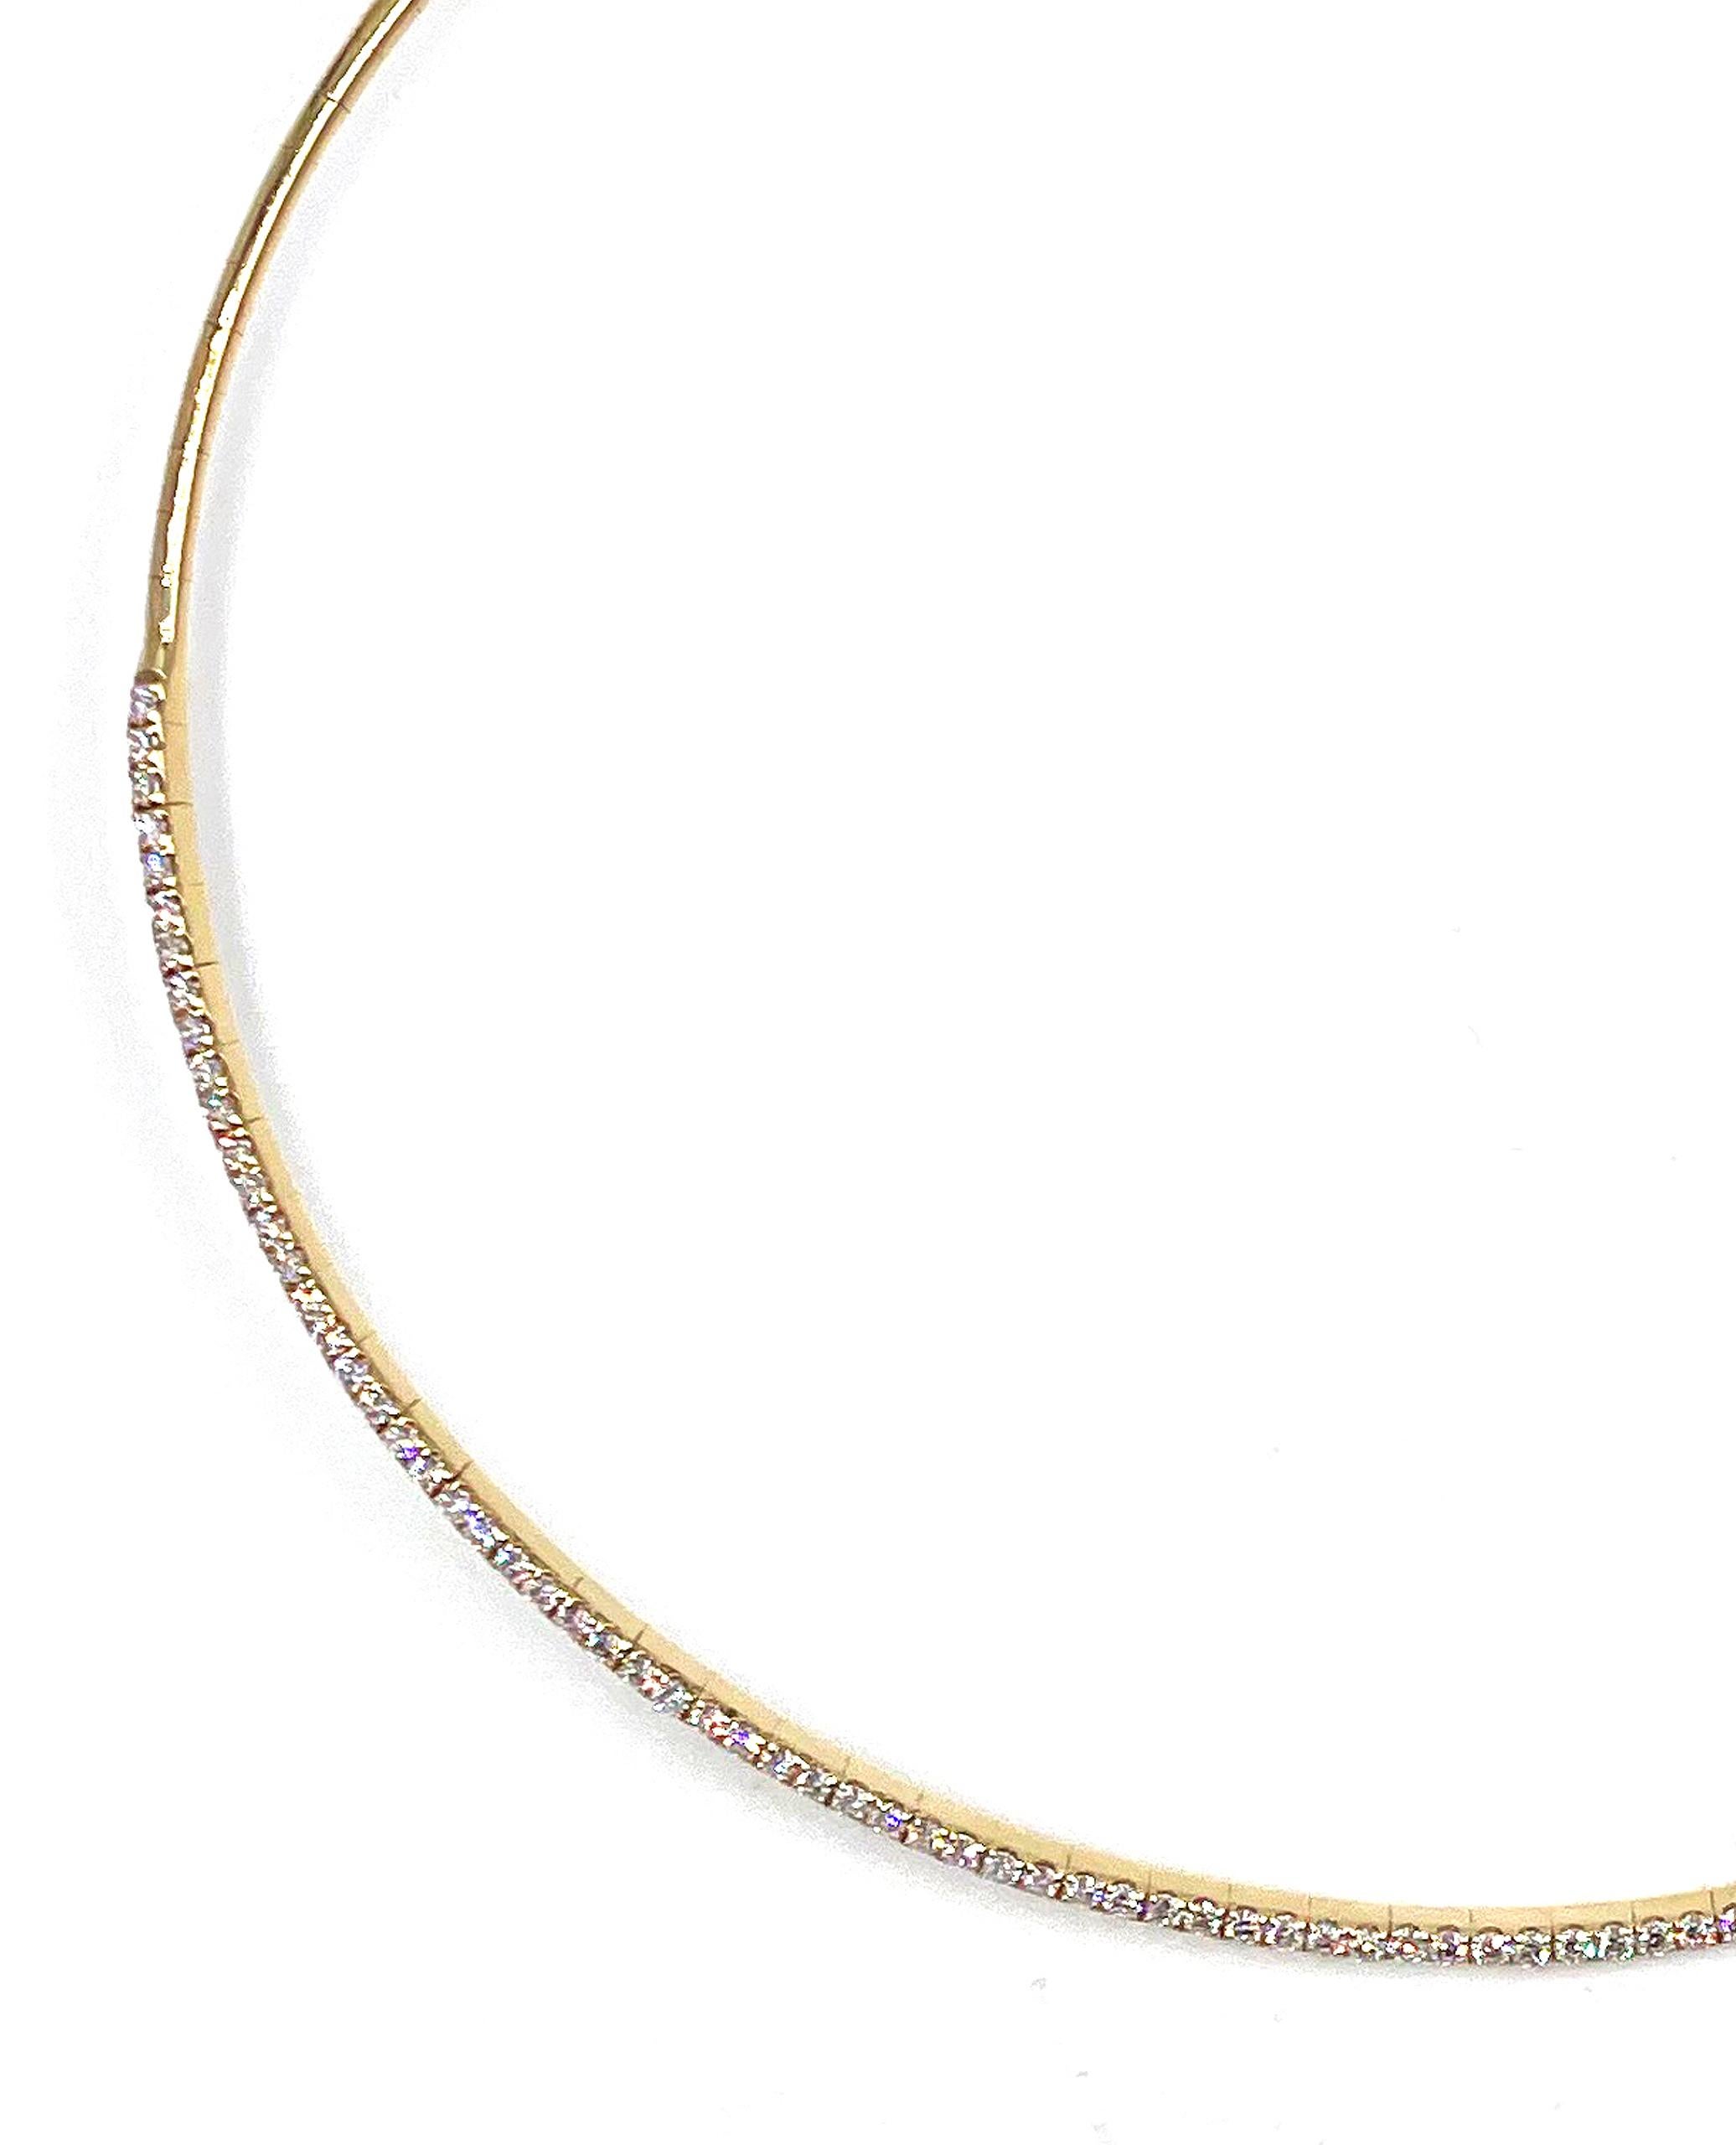 Simple, propre et intemporel. Ce collier en or jaune 18 carats est serti de diamants ronds de taille brillant pesant au total 2,36 carats.  Peut être porté seul ou superposé à une autre pièce.

* Les diamants sont de couleur G et de pureté VS.
*